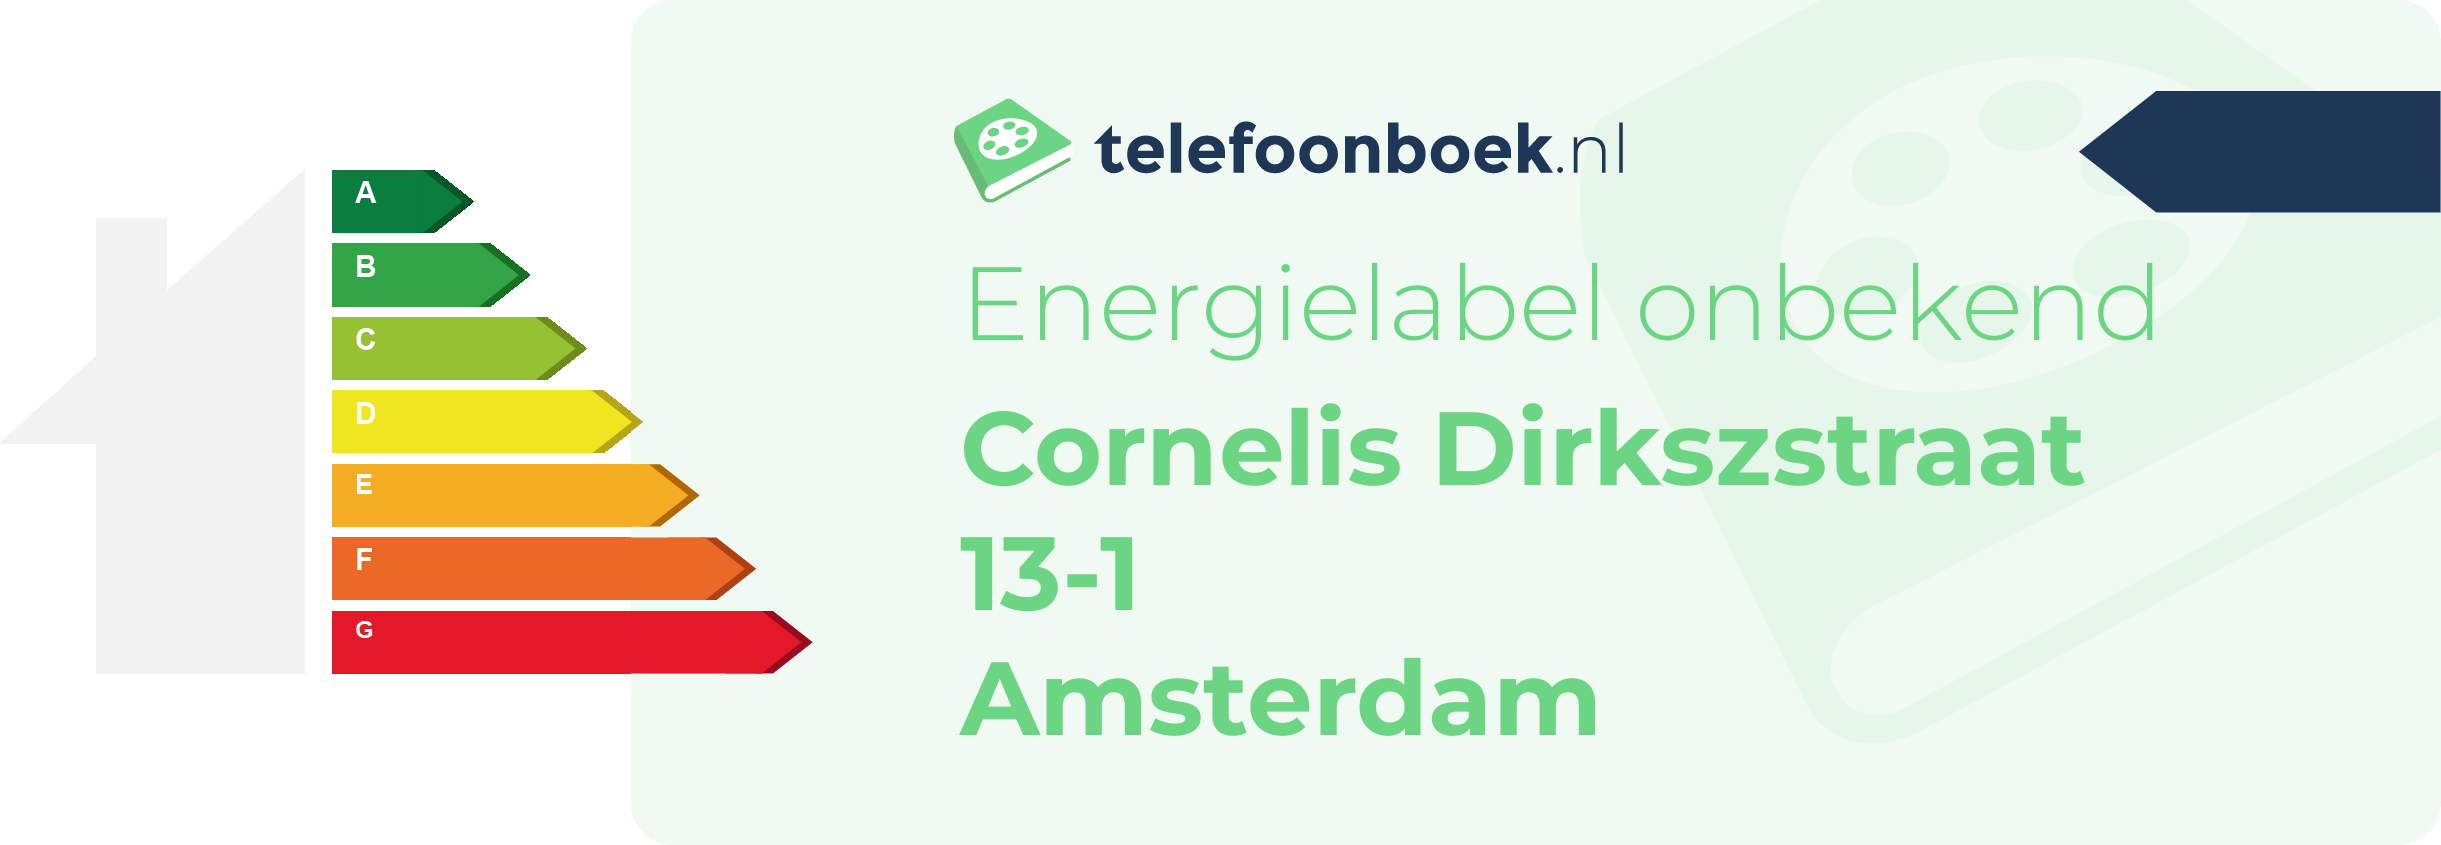 Energielabel Cornelis Dirkszstraat 13-1 Amsterdam